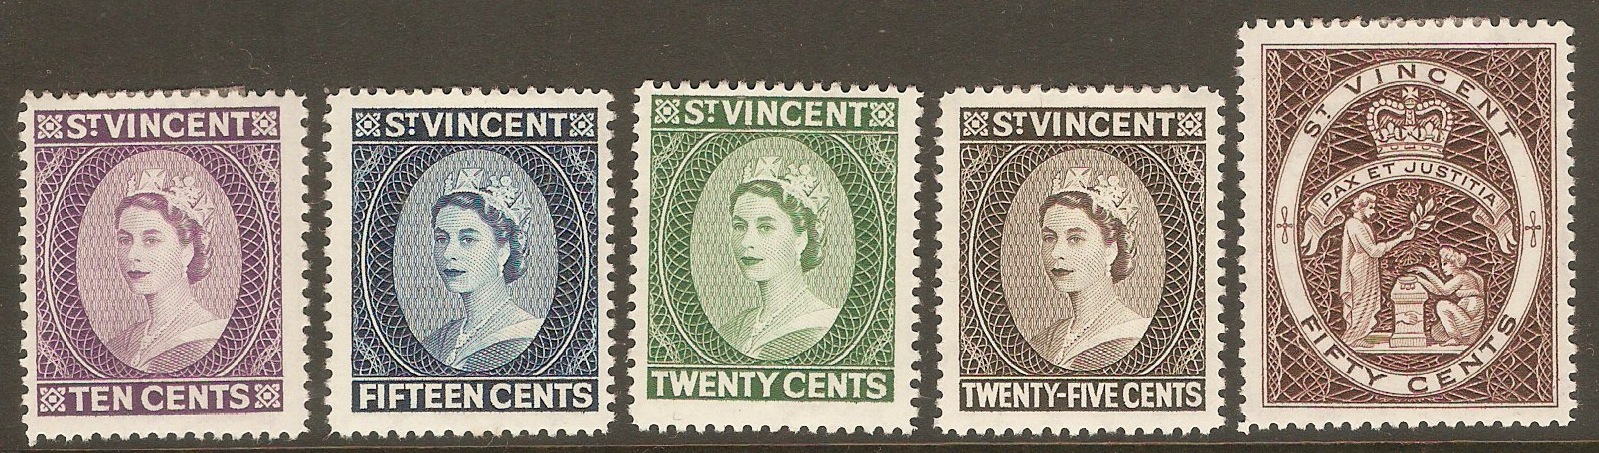 St Vincent 1964 Queen Elizabeth II definitives set. SG207-SG211.